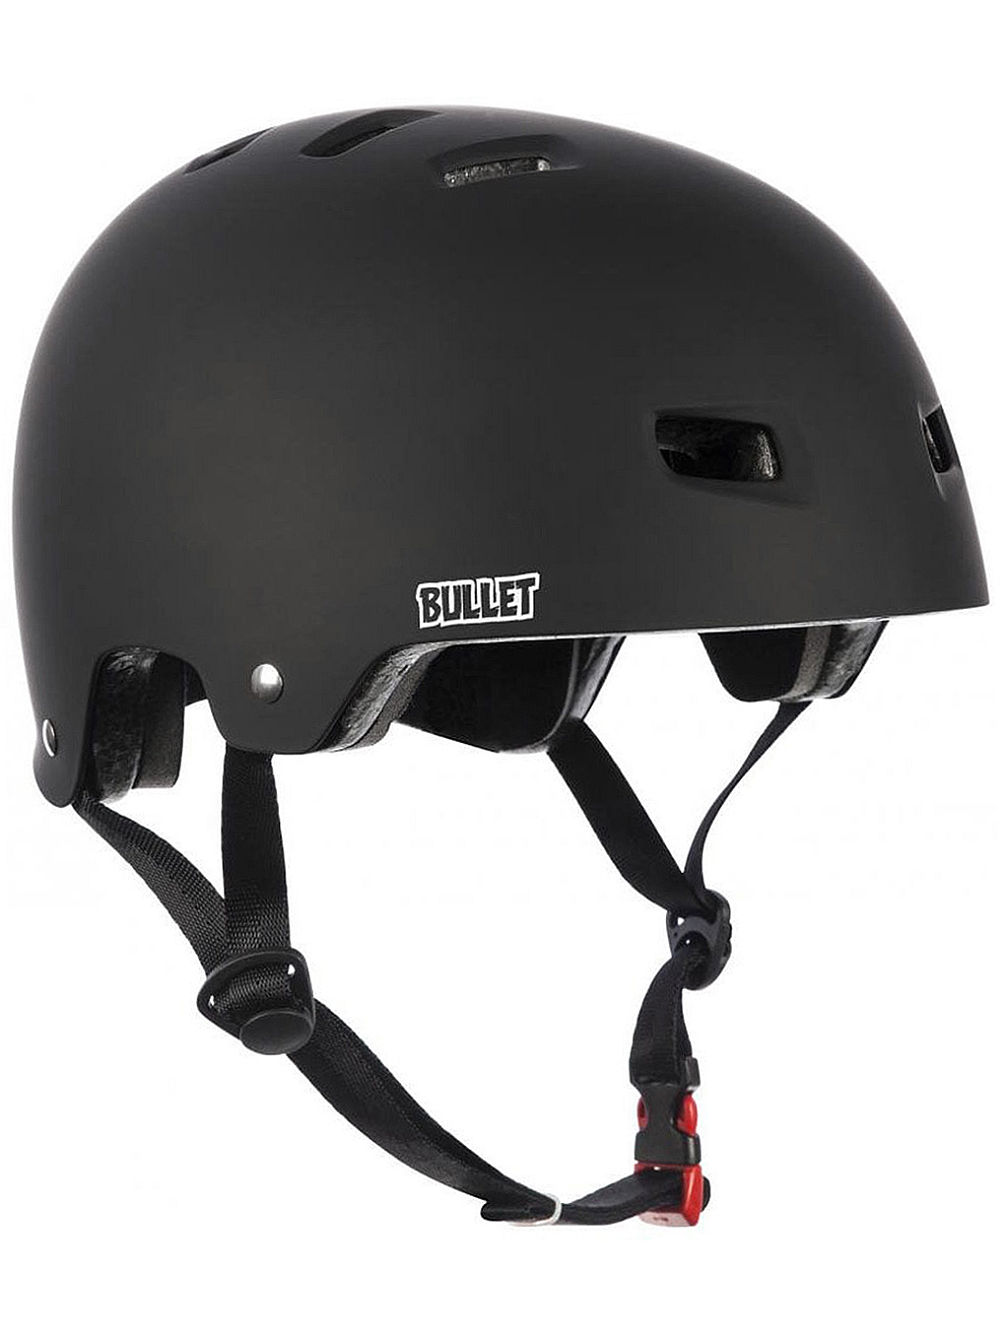 Deluxe T35 Helmet